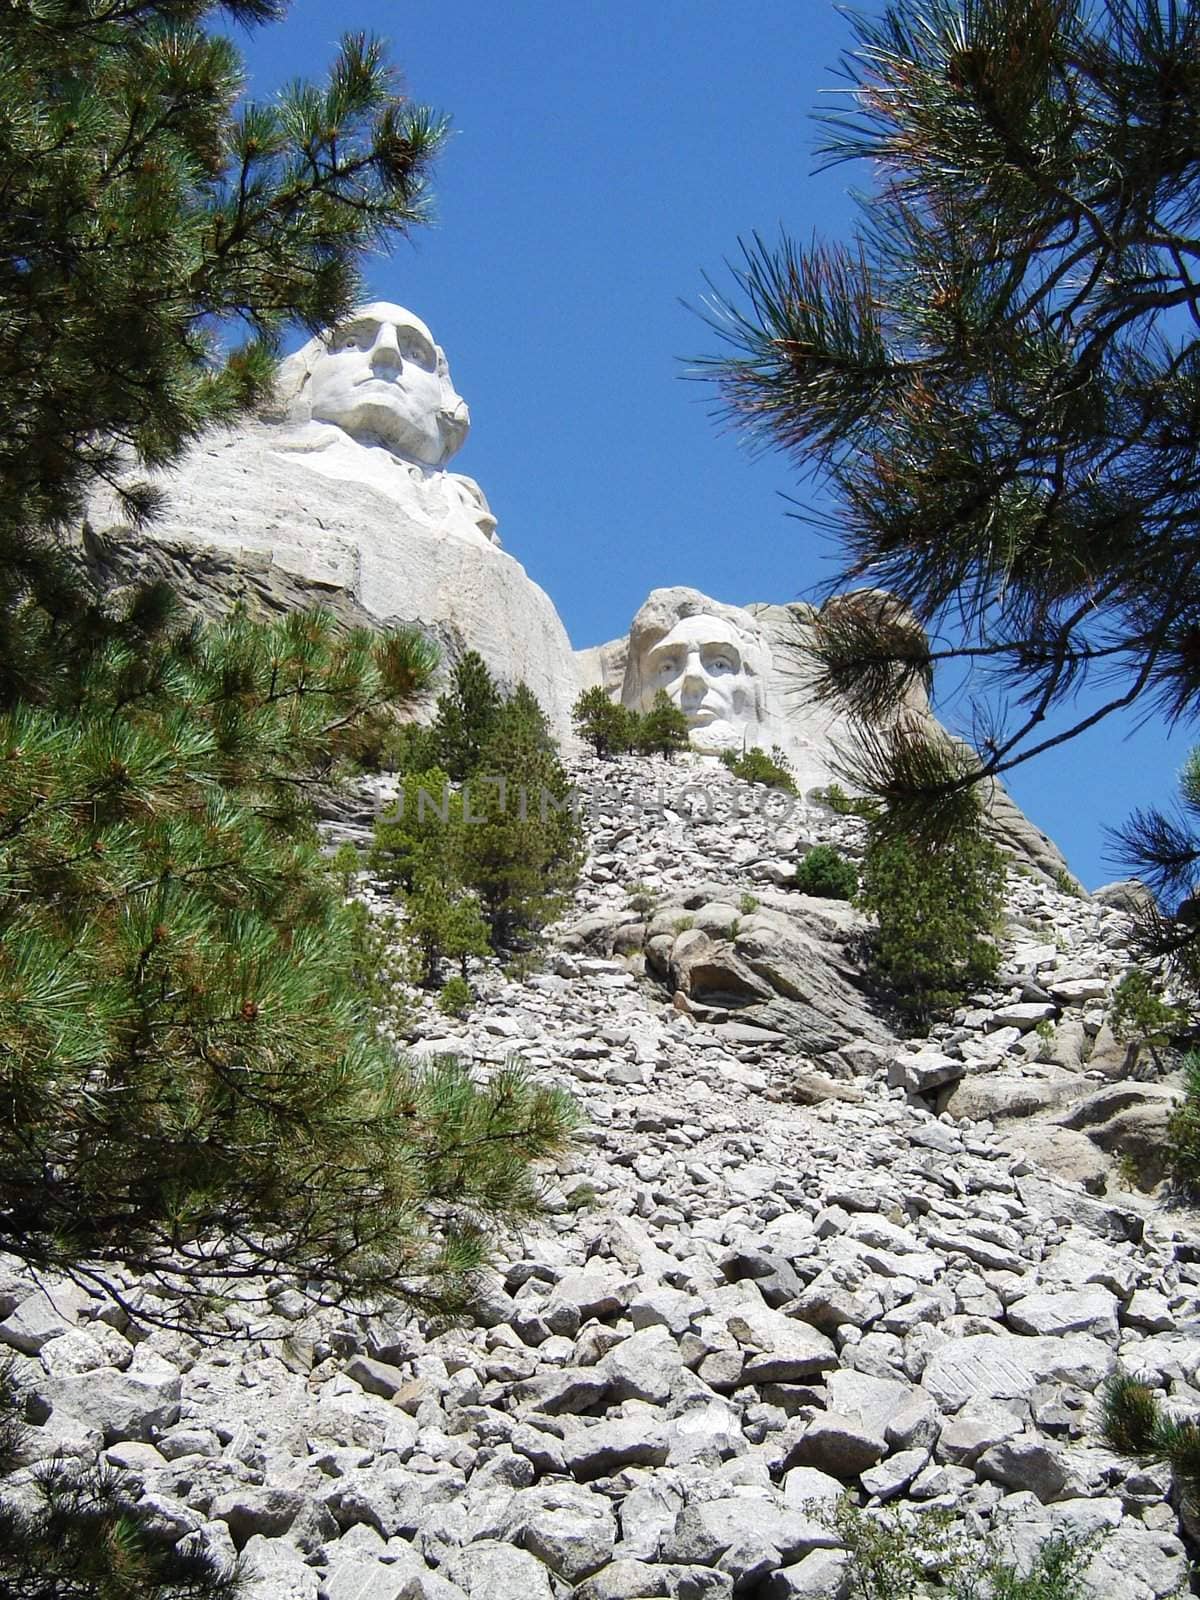 Mount Rushmore South Dakota